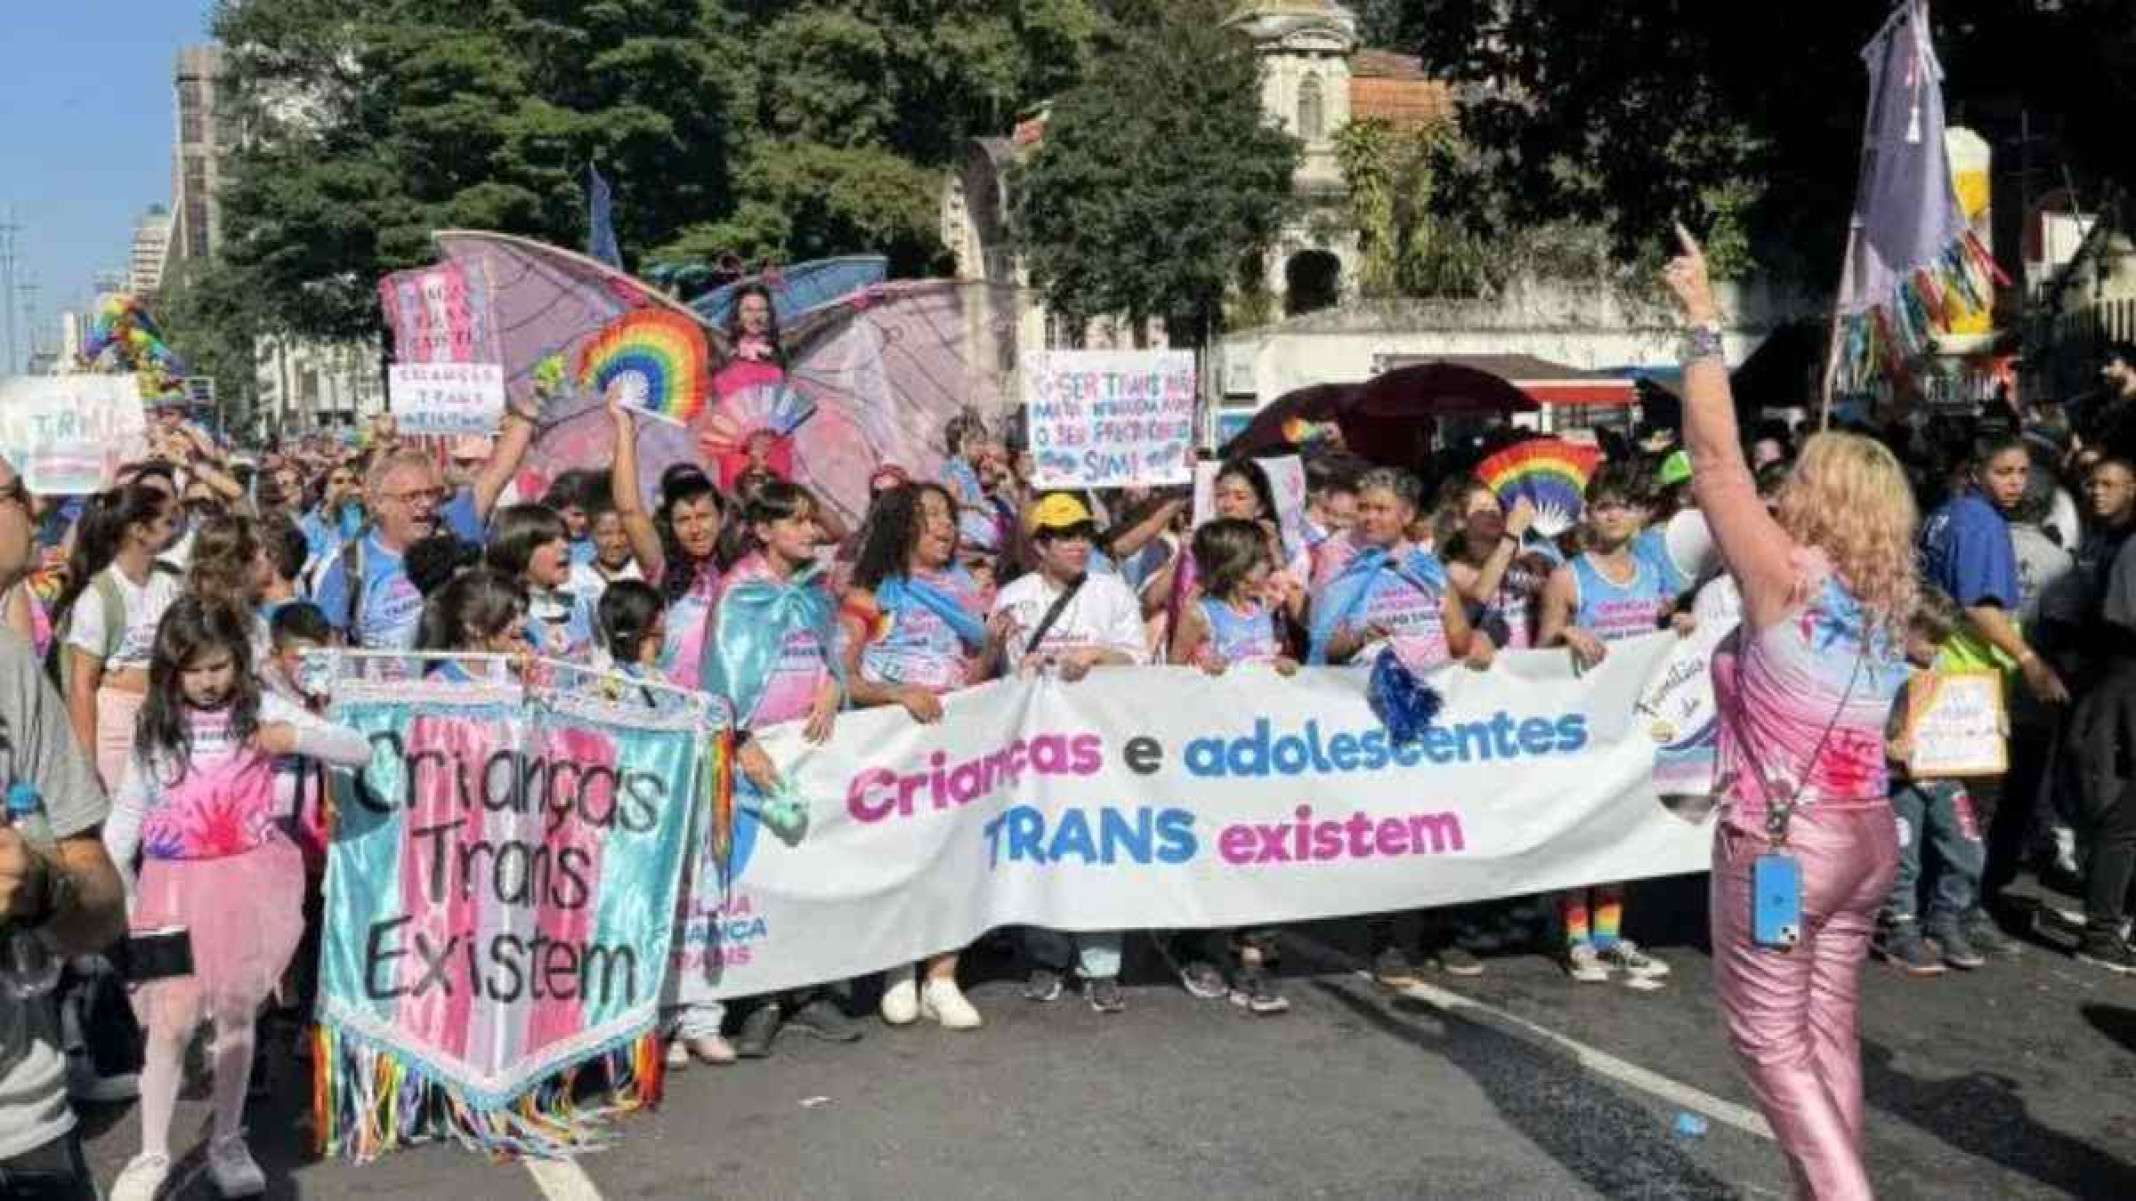 Ex-secretário de Bolsonaro quer proibir crianças na parada LGBTQIA+